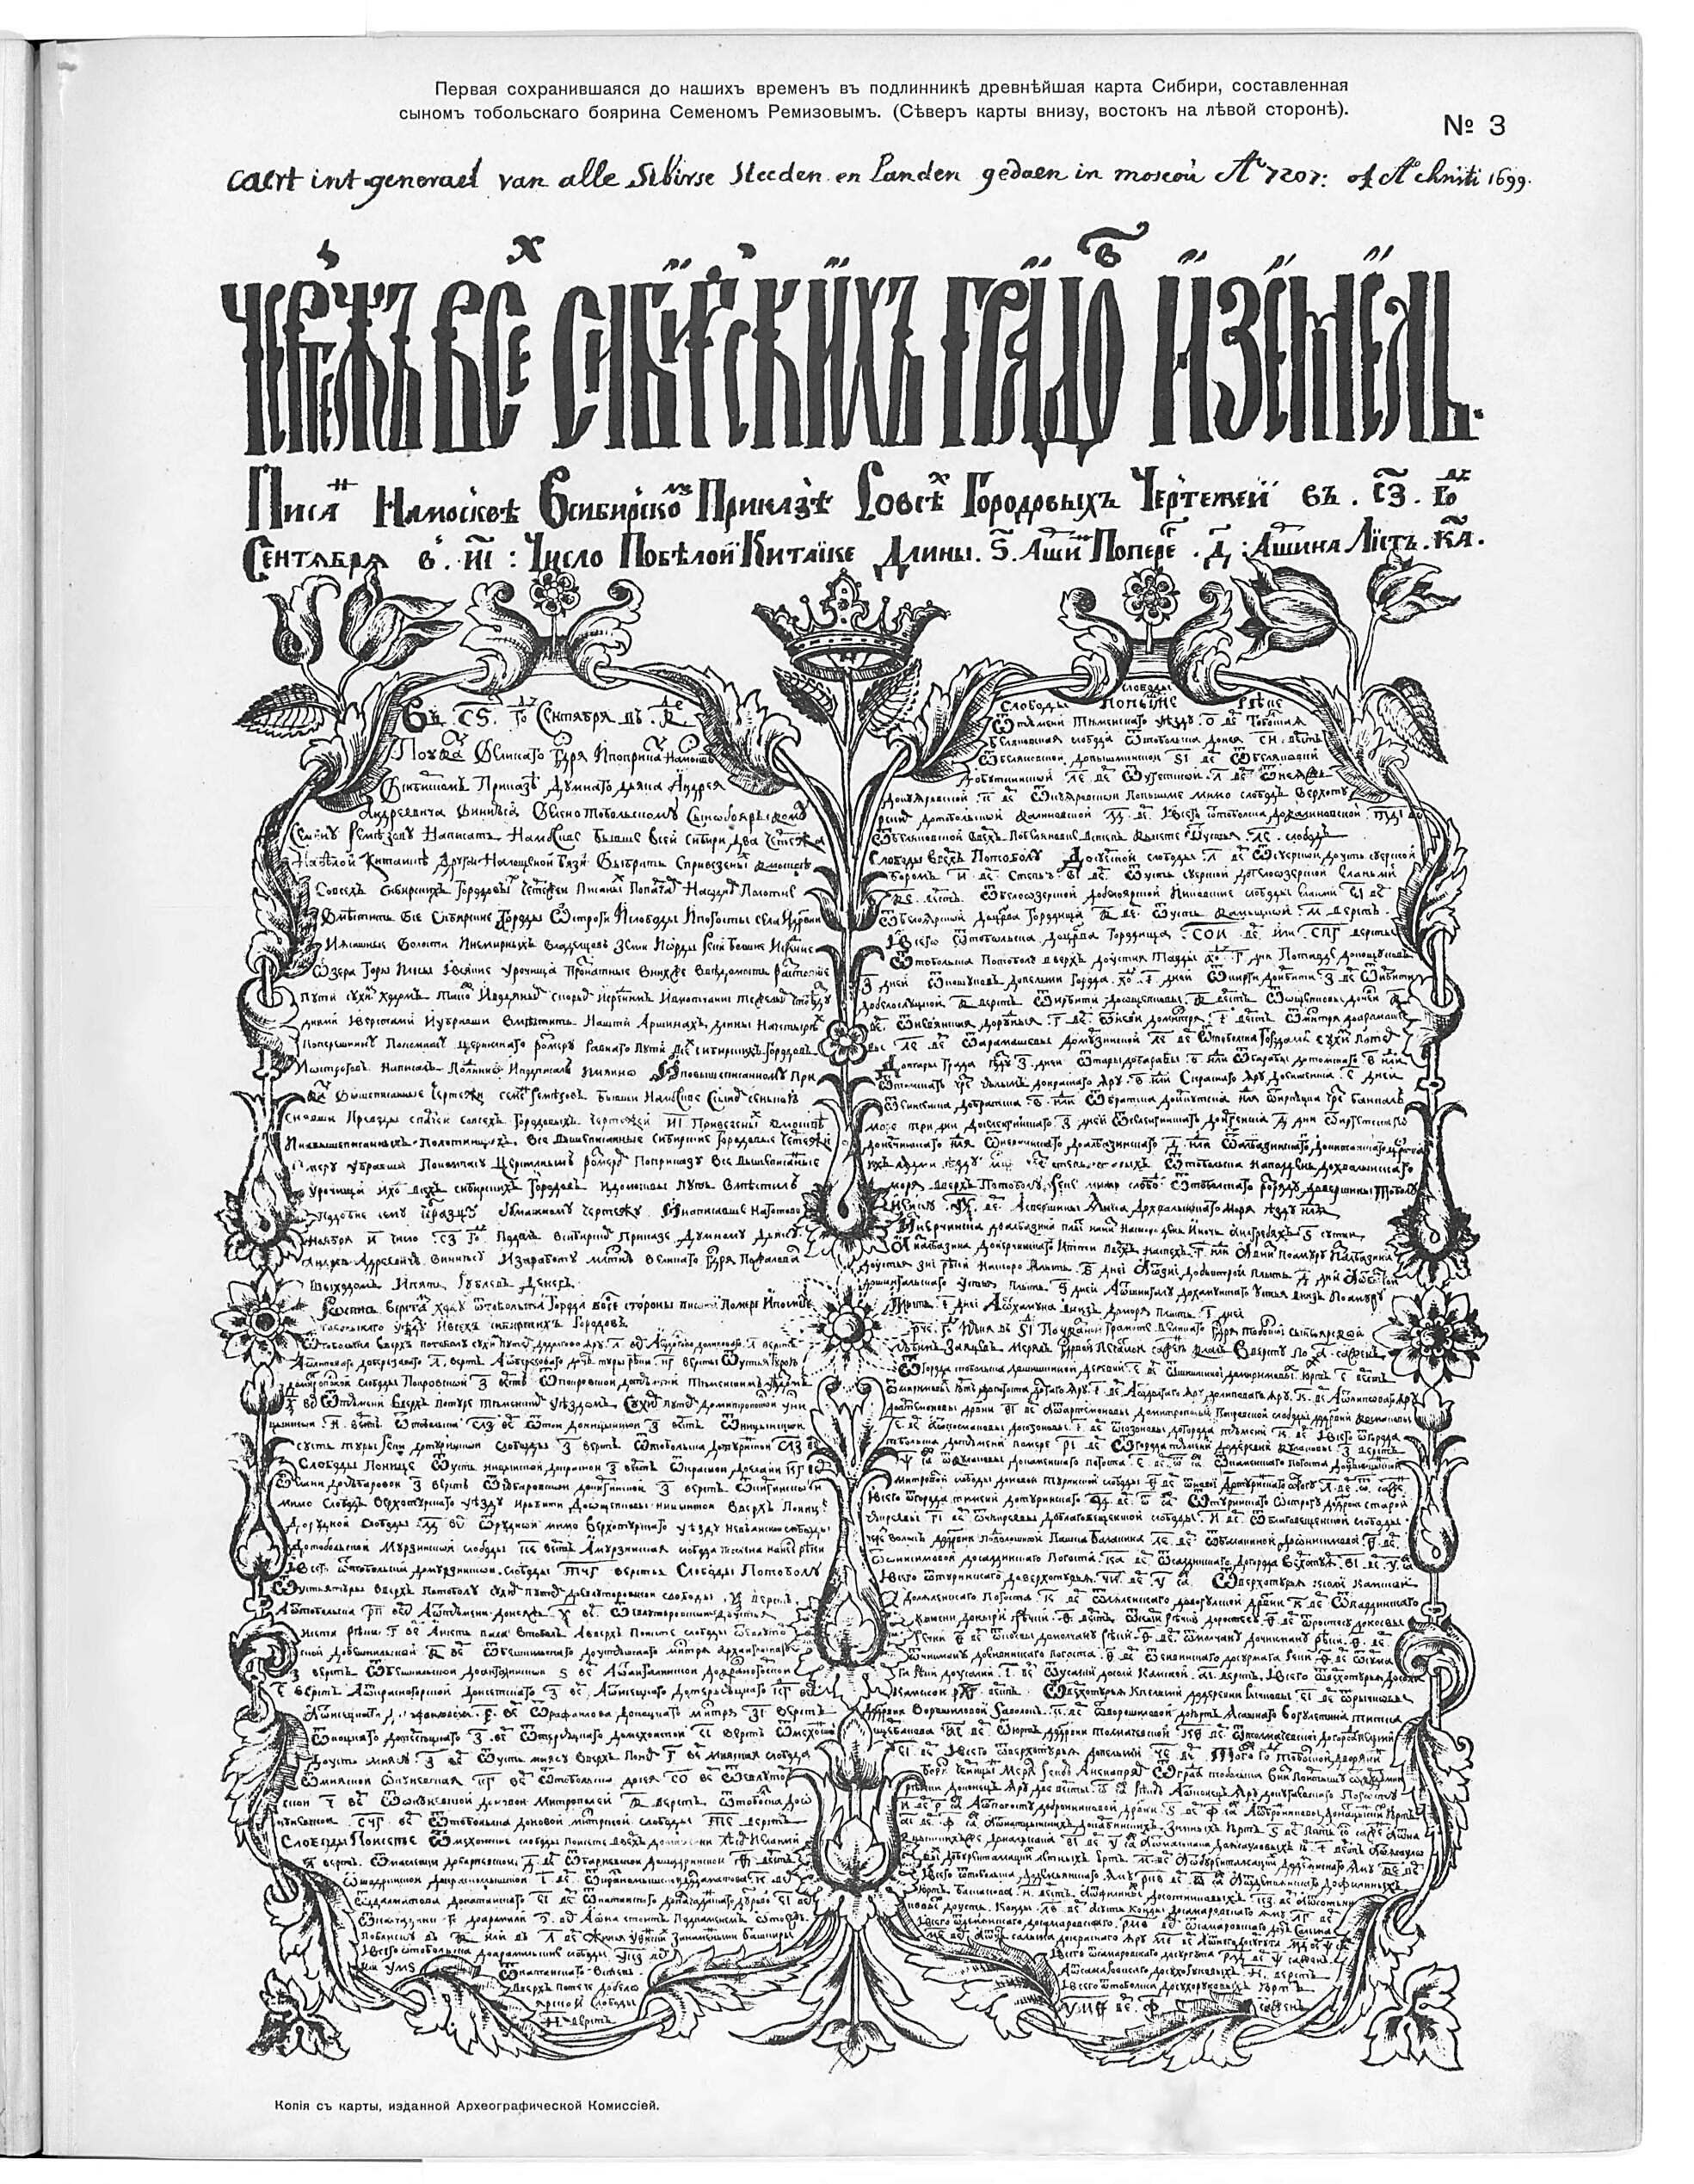 This old map of Chertezh Vsekh Sibirskikh Gorodov I Zemel&